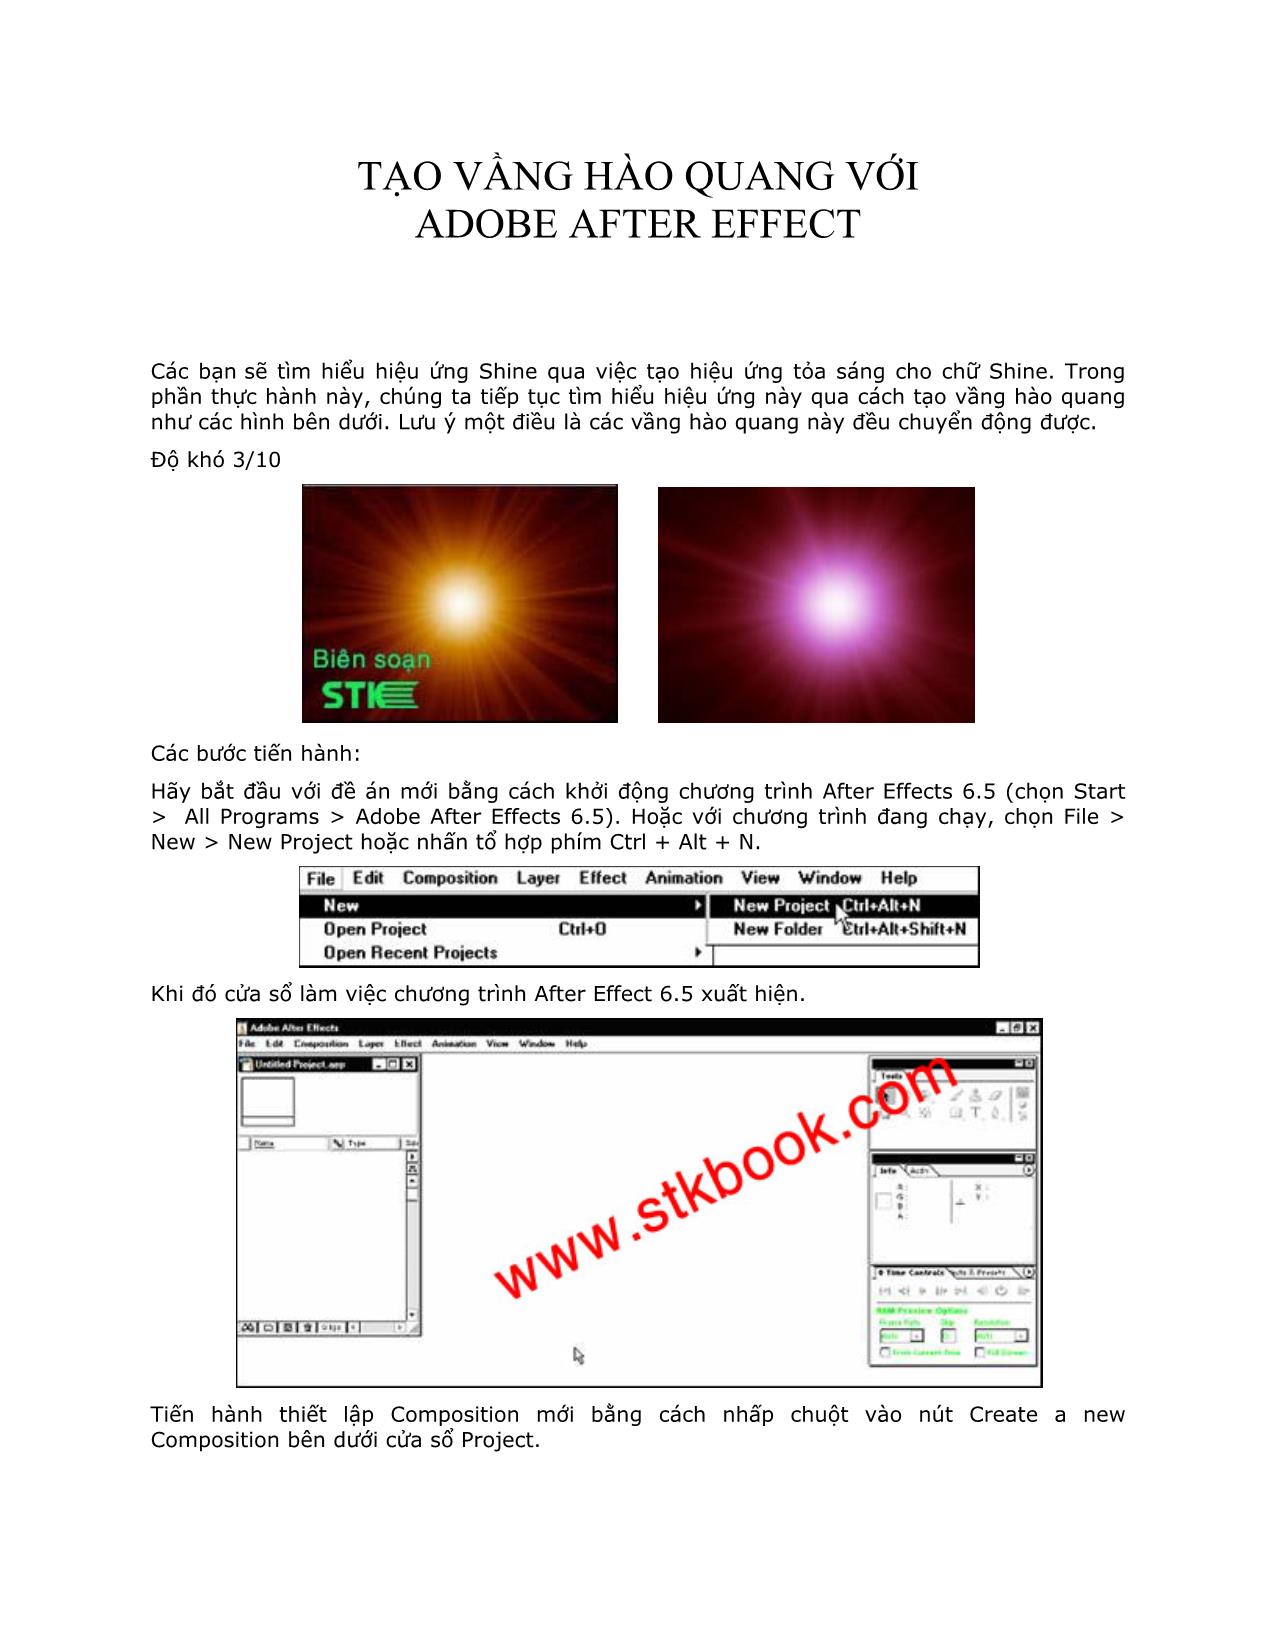 Tạo vầng hào quang với Adobe After Effect (Phần 1) trang 1